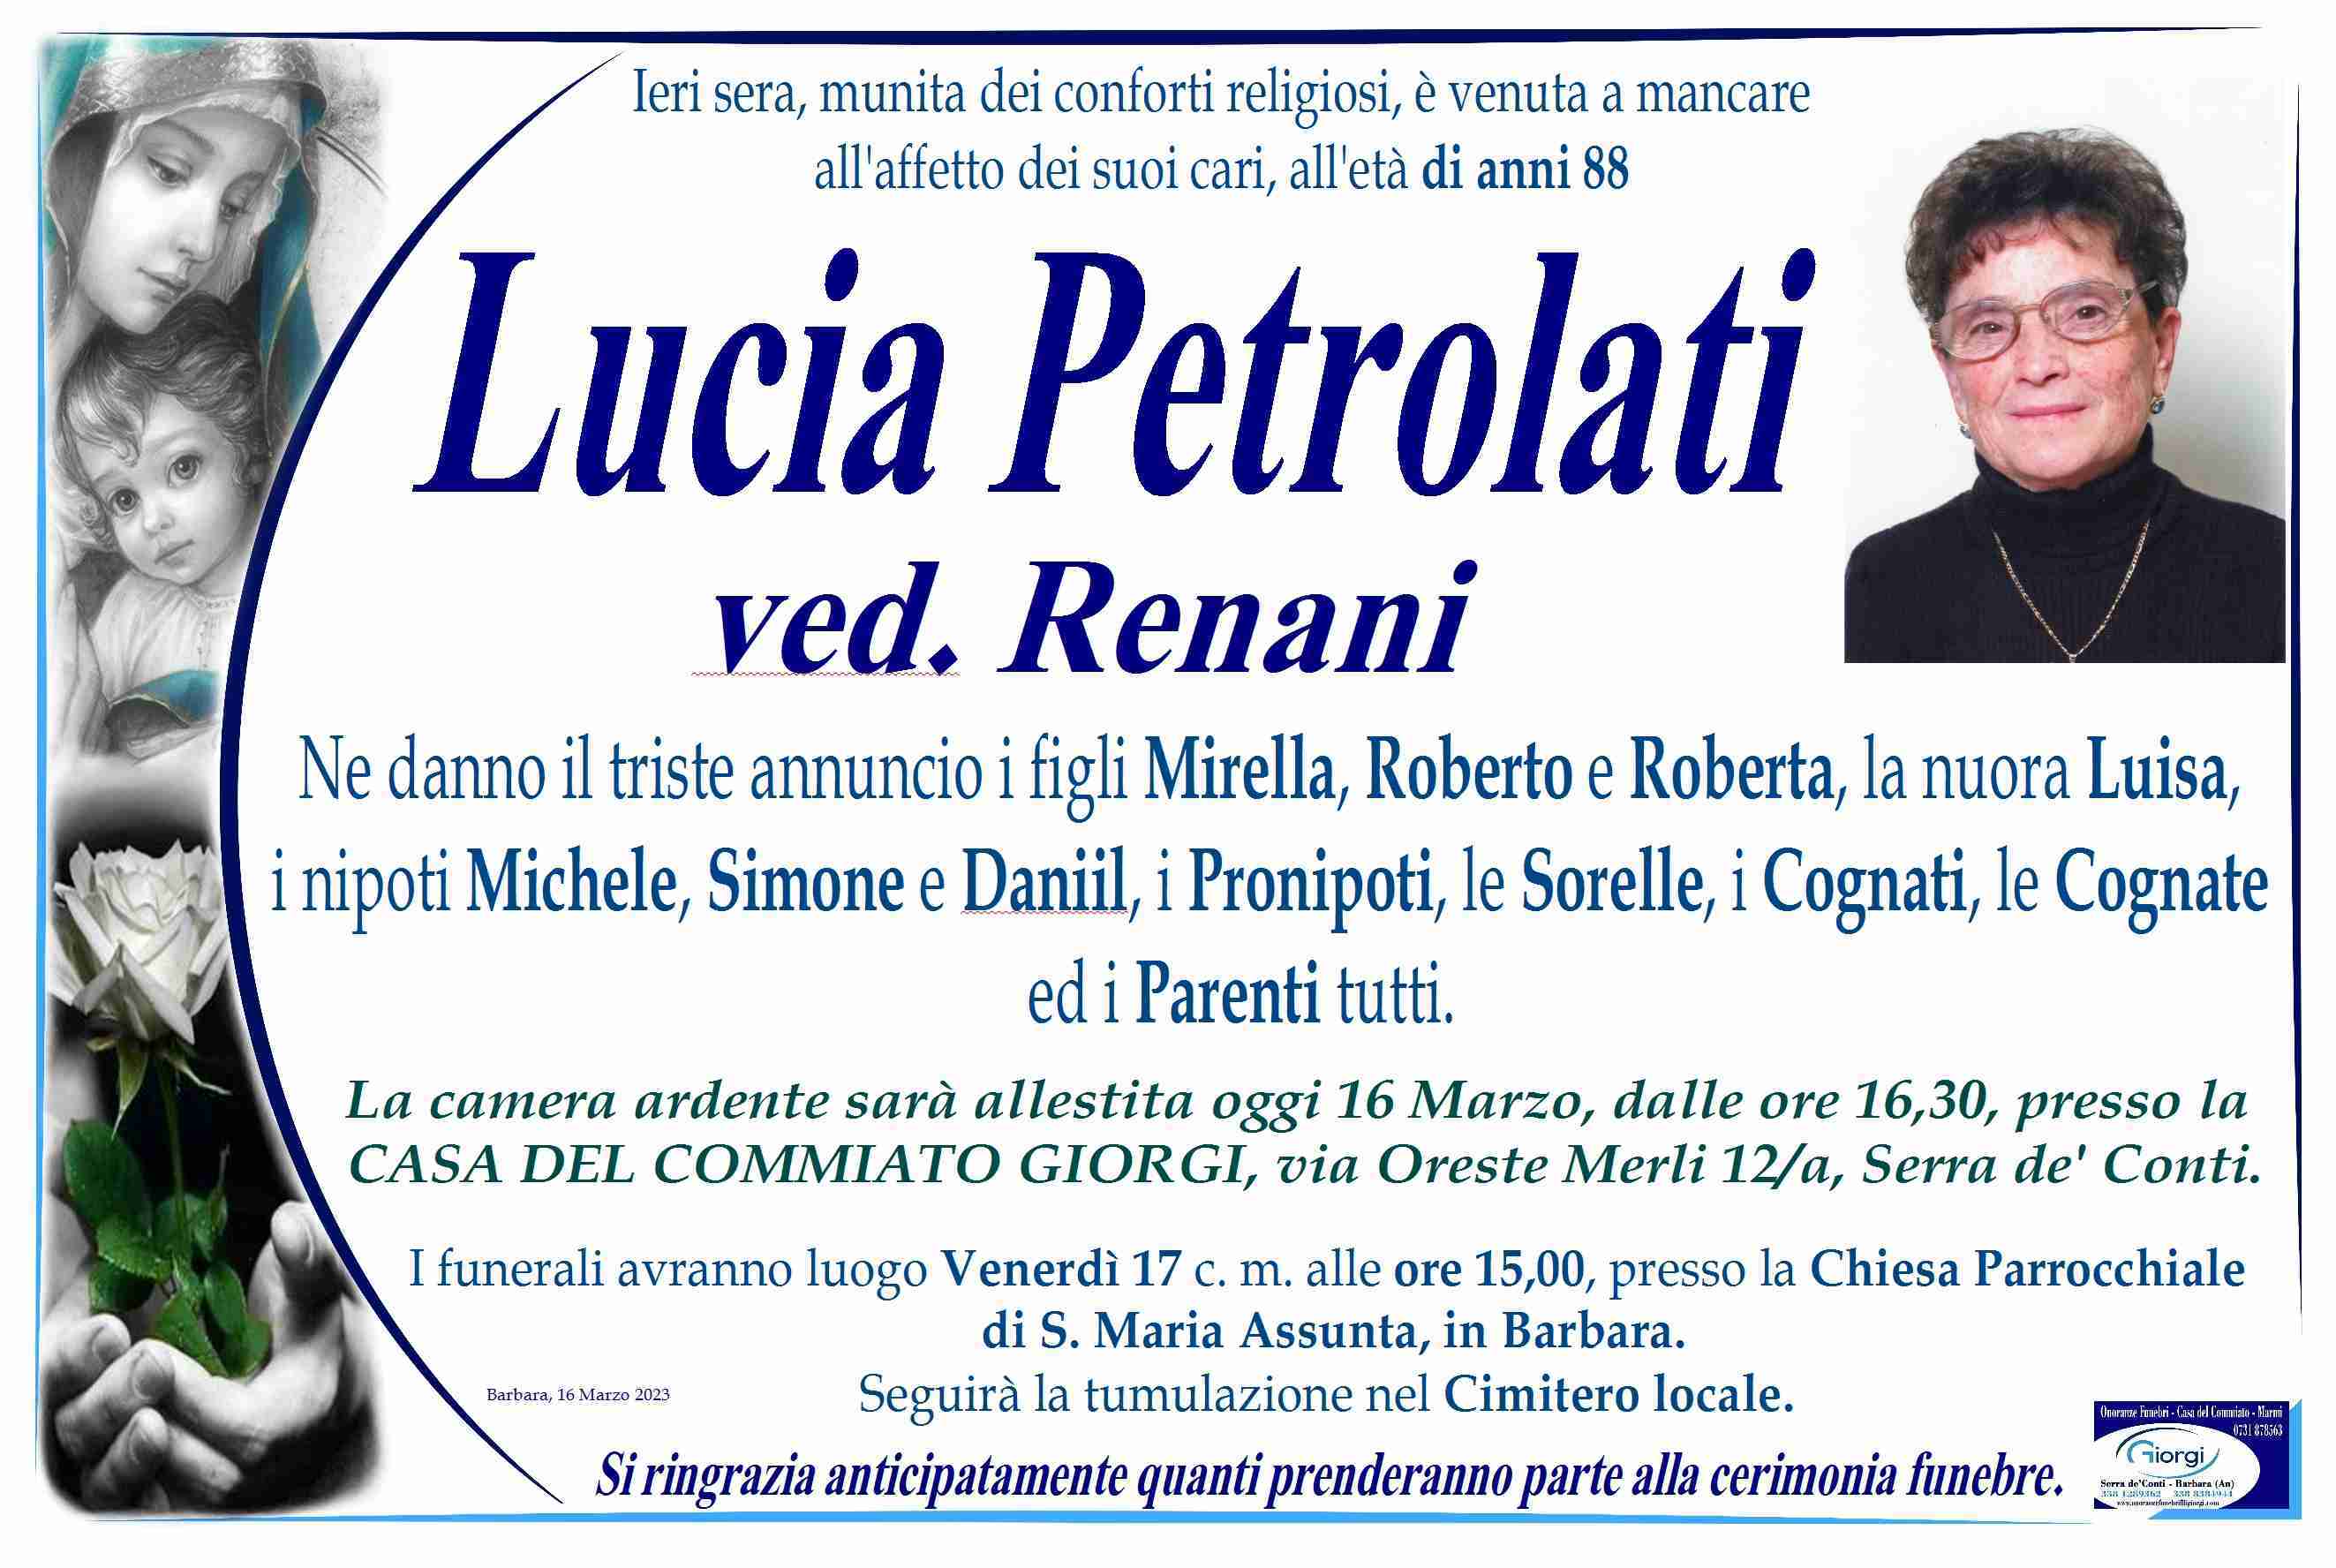 Lucia Petrolati